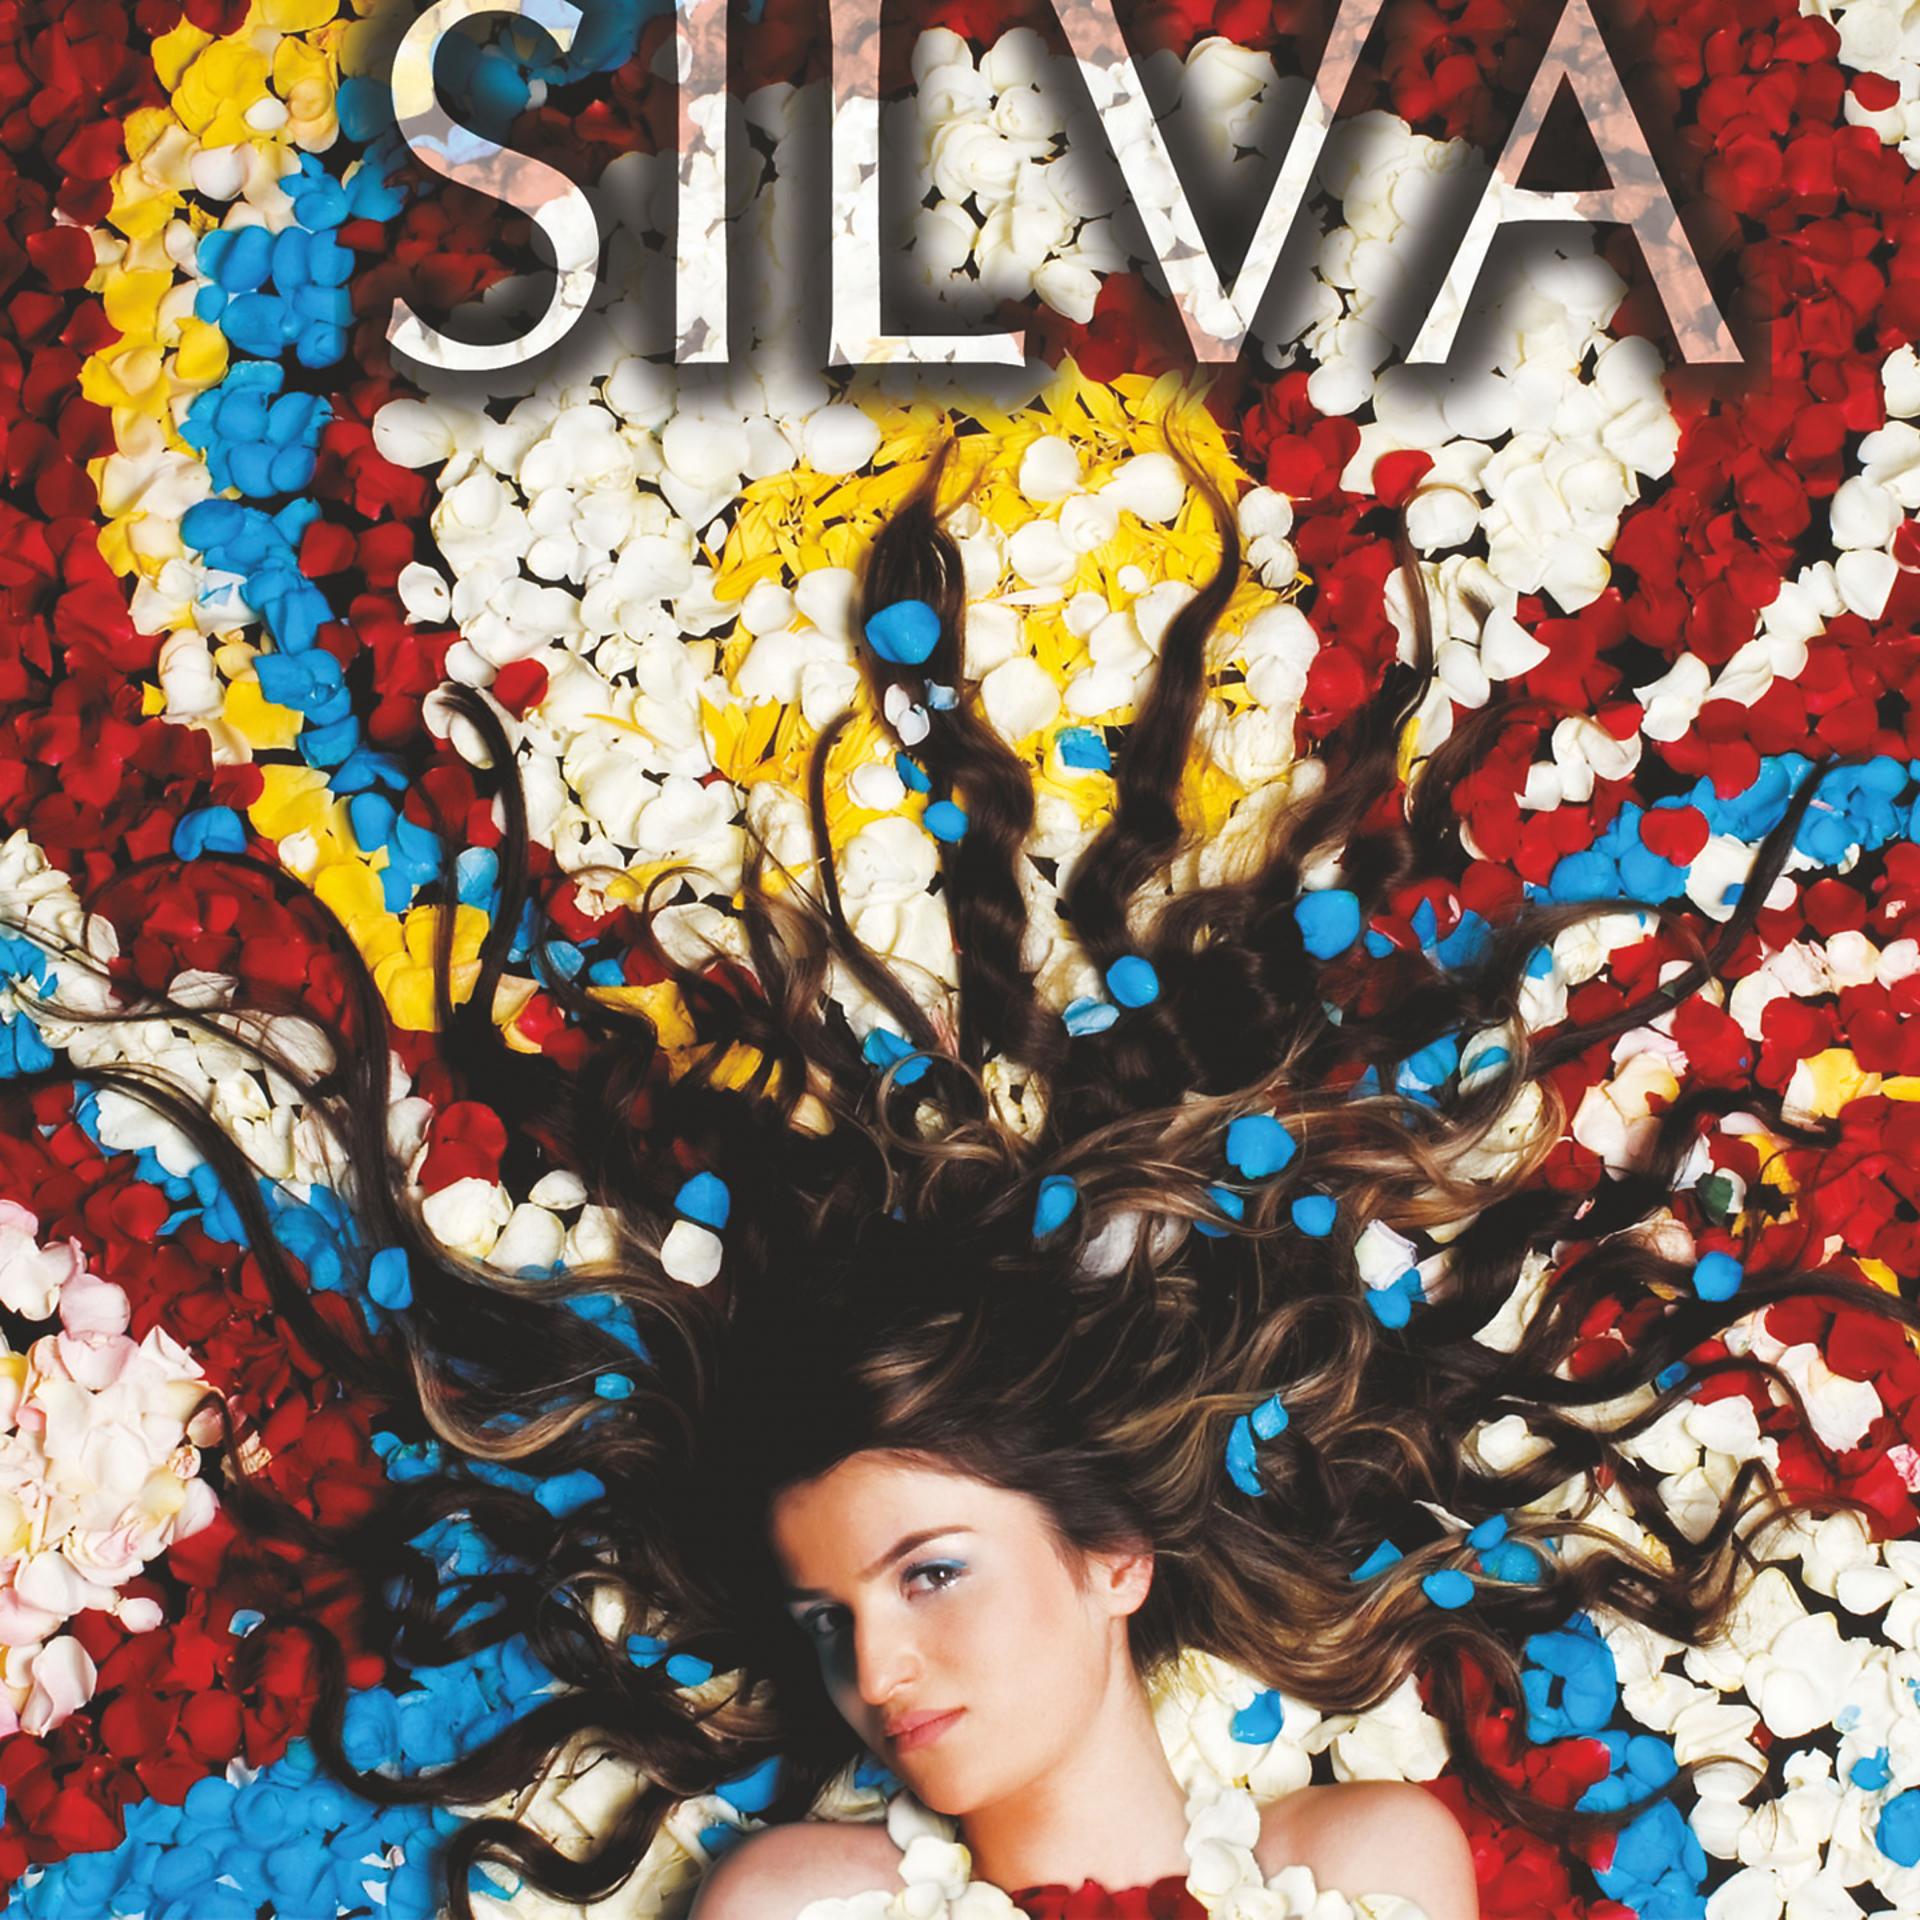 Постер альбома Silva Hakobyan